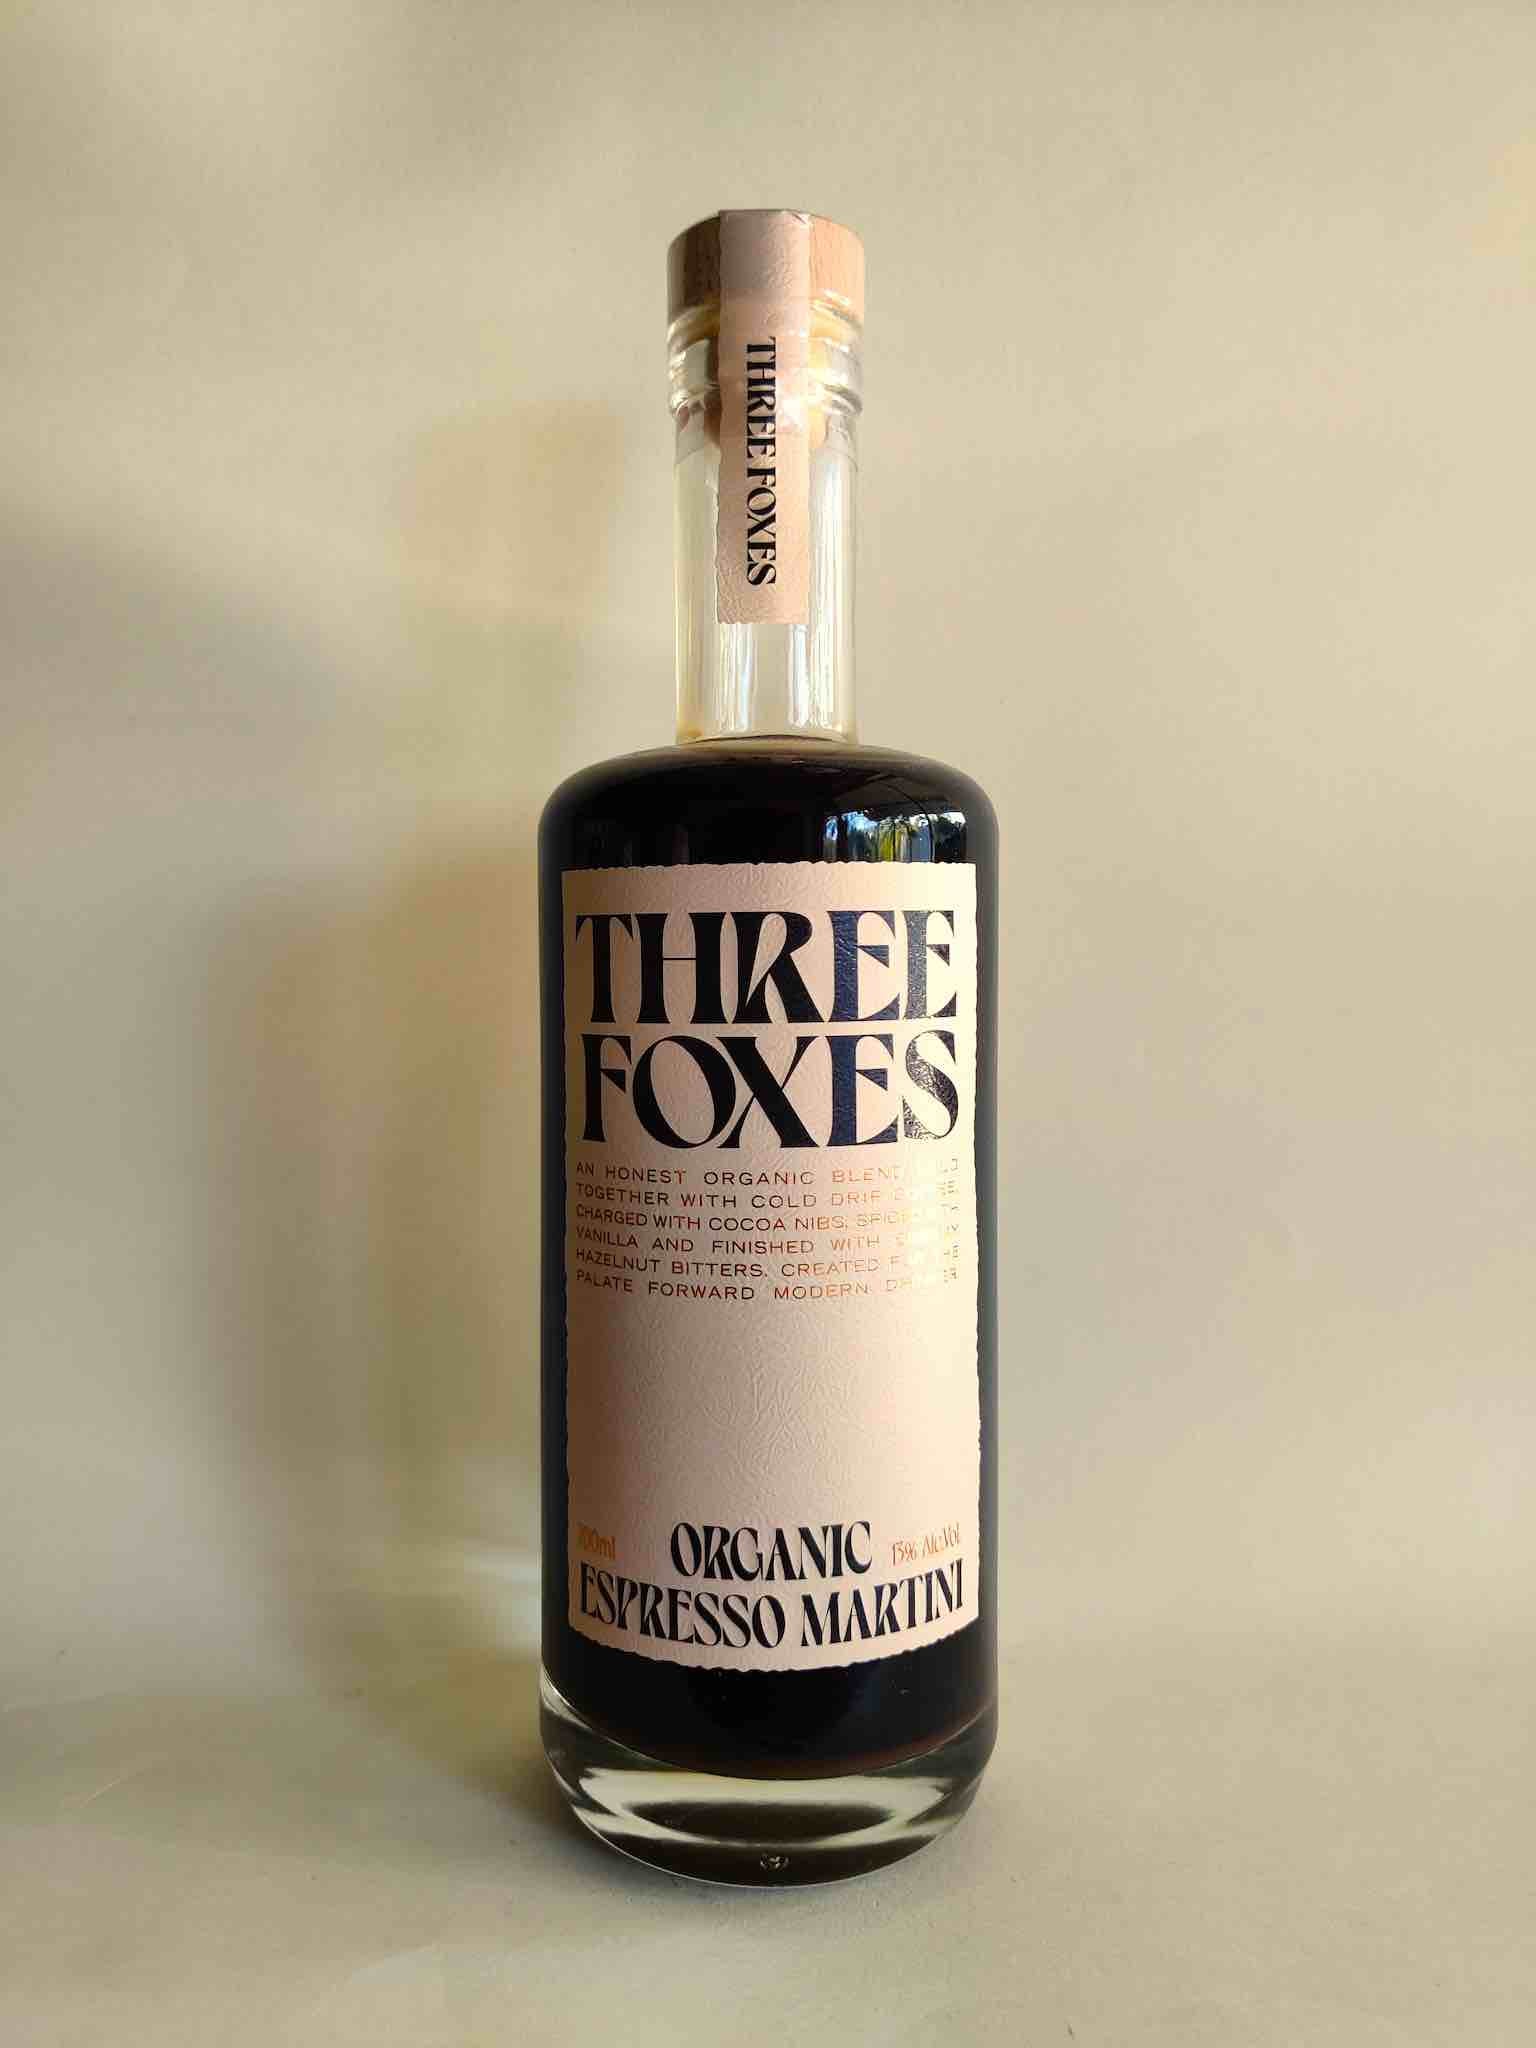 A 700ml bottle of Three Foxes Organic Espresso Martini.